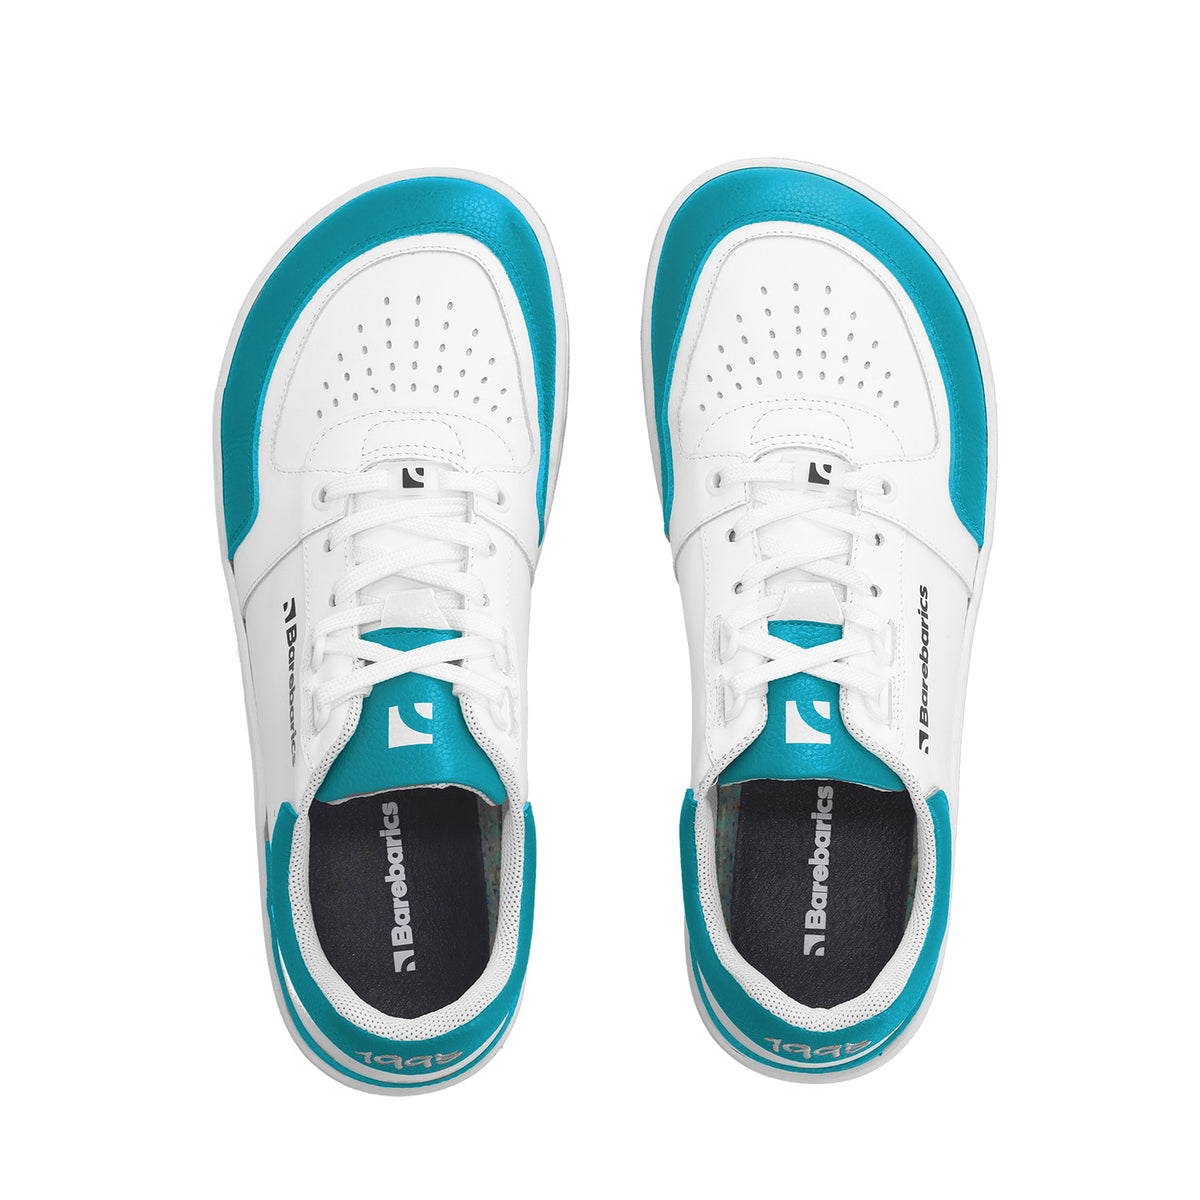 Barefoot Sneakers Barebarics Wave - White & Dark Turquoise 6  - OzBarefoot